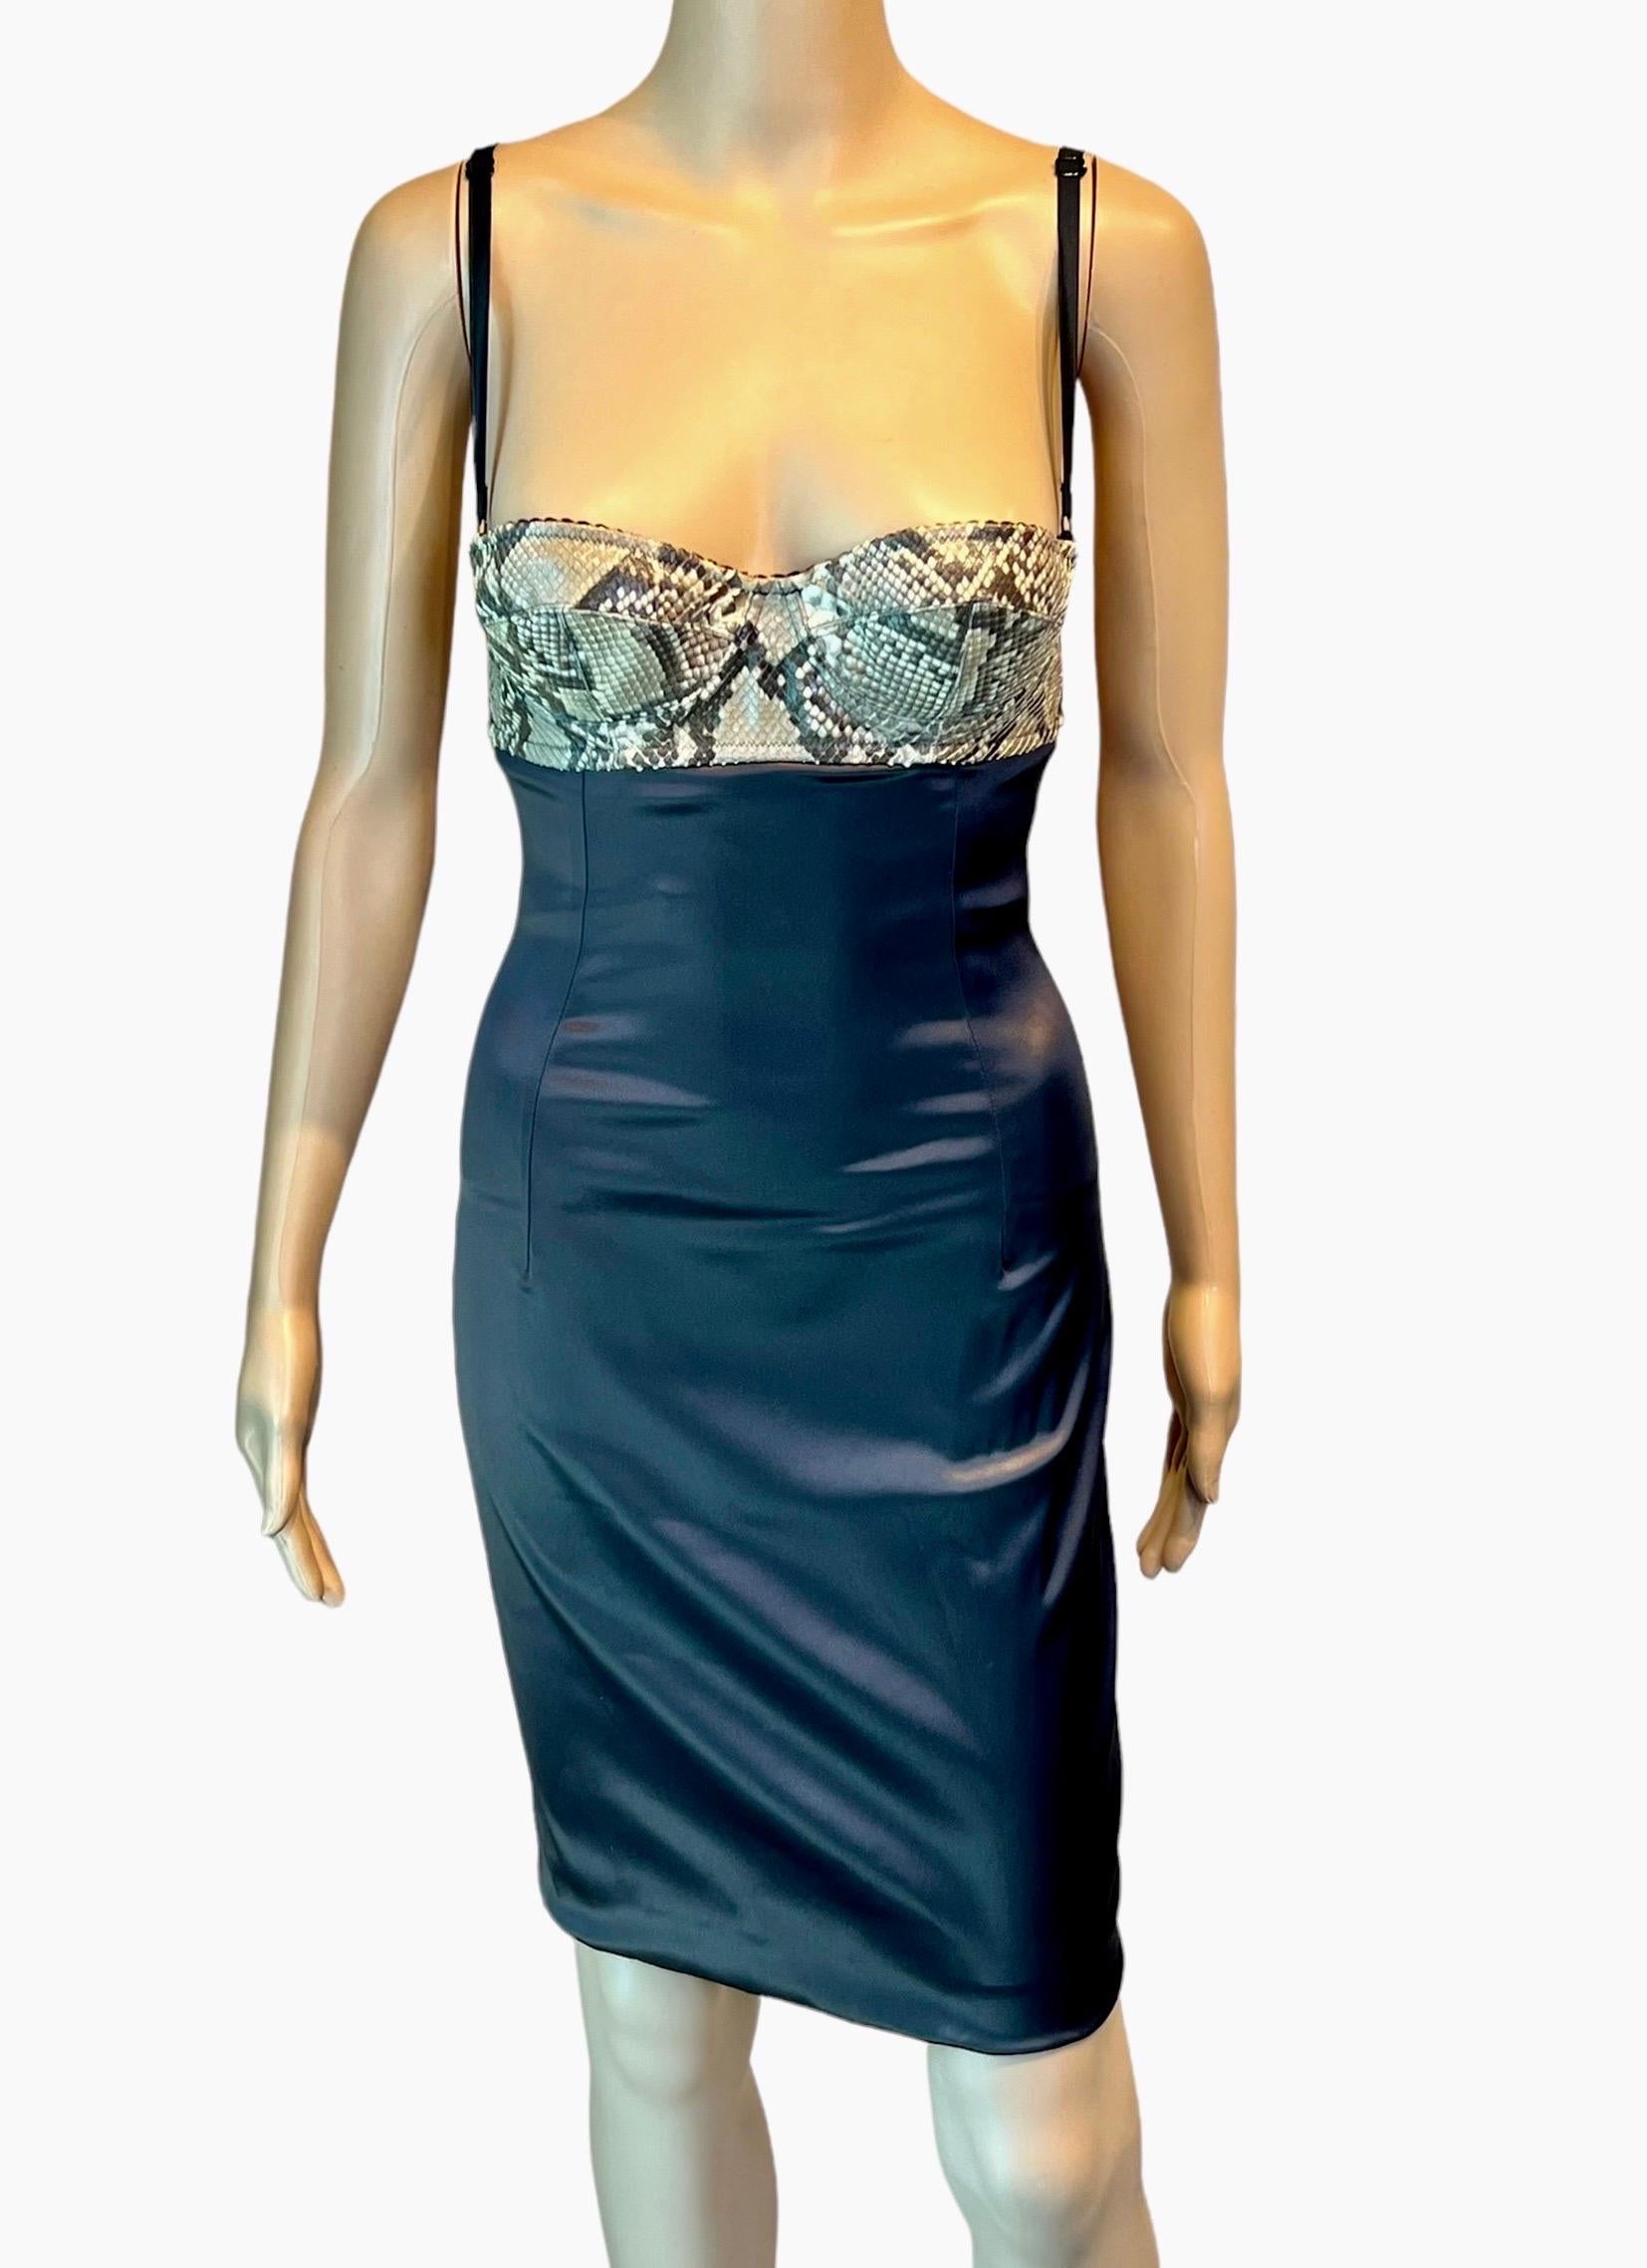 Women's Dolce & Gabbana S/S 2005 Python Leather Bustier Bra Bodycon Silk Mini Dress